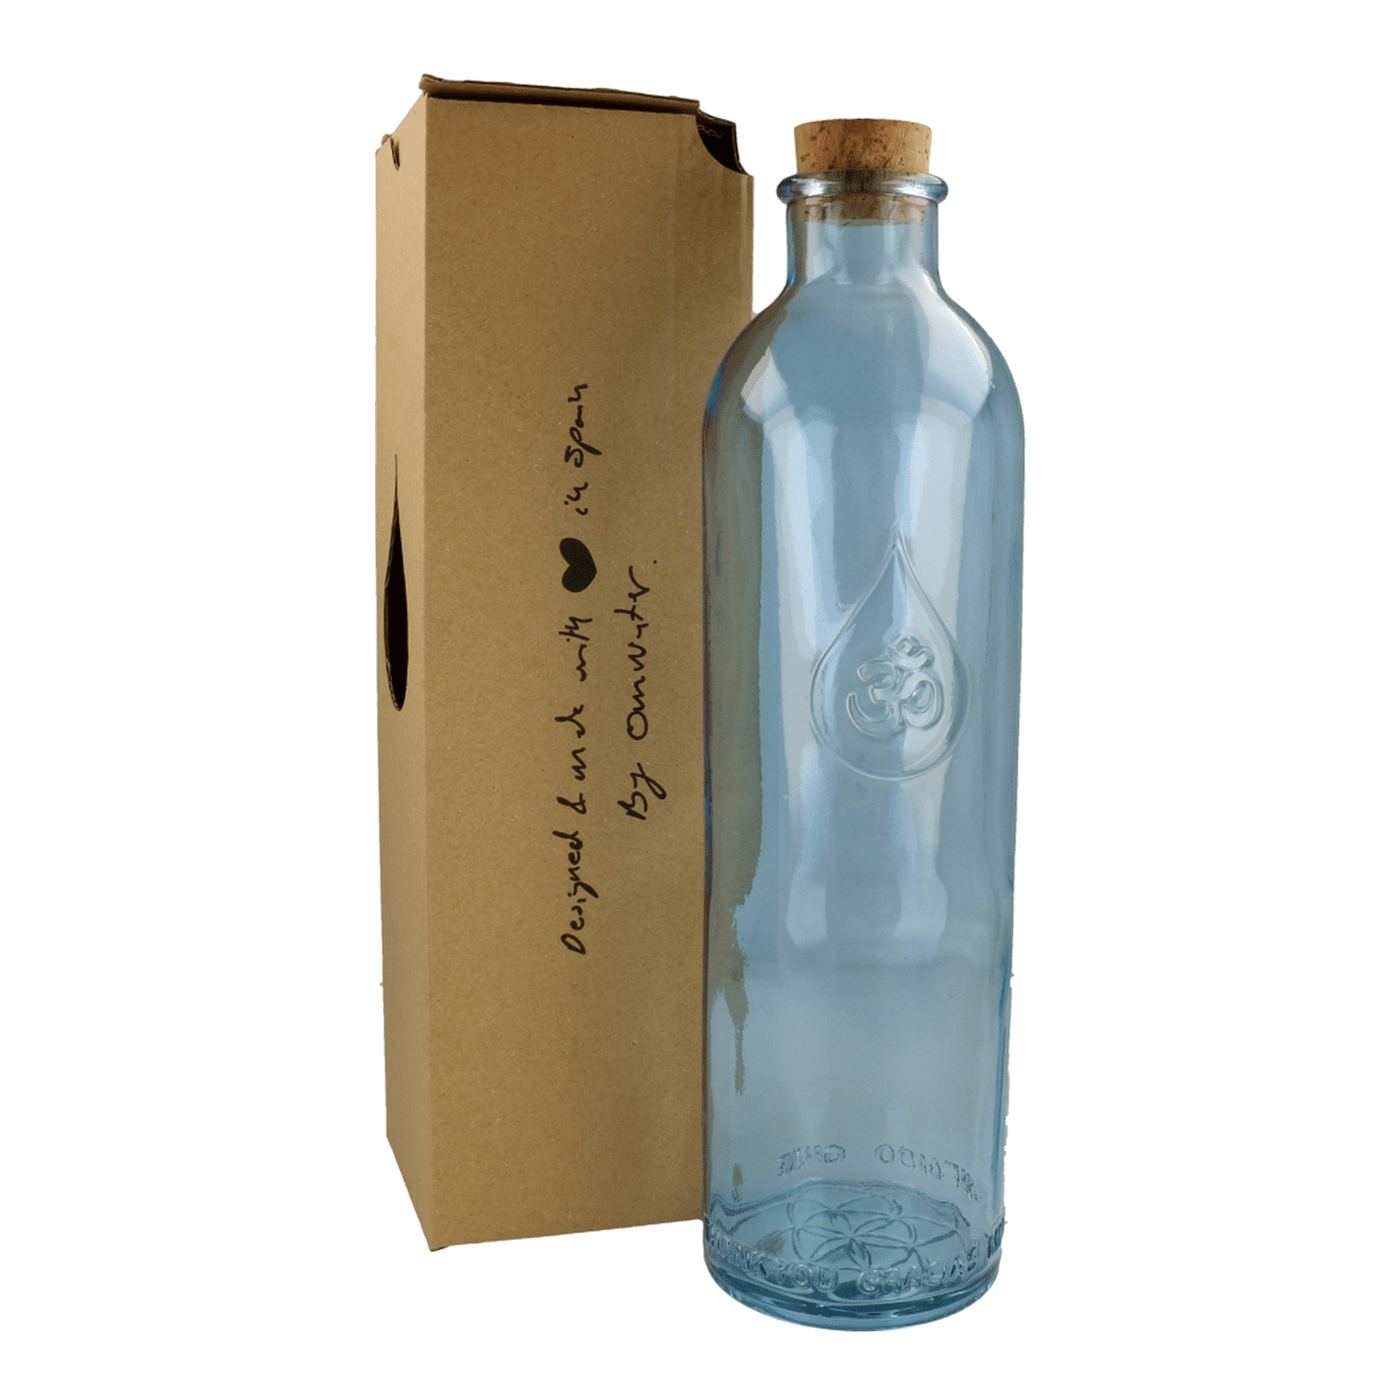 Botella de Cristal con Asa y Tapa de Plástico 1,4L